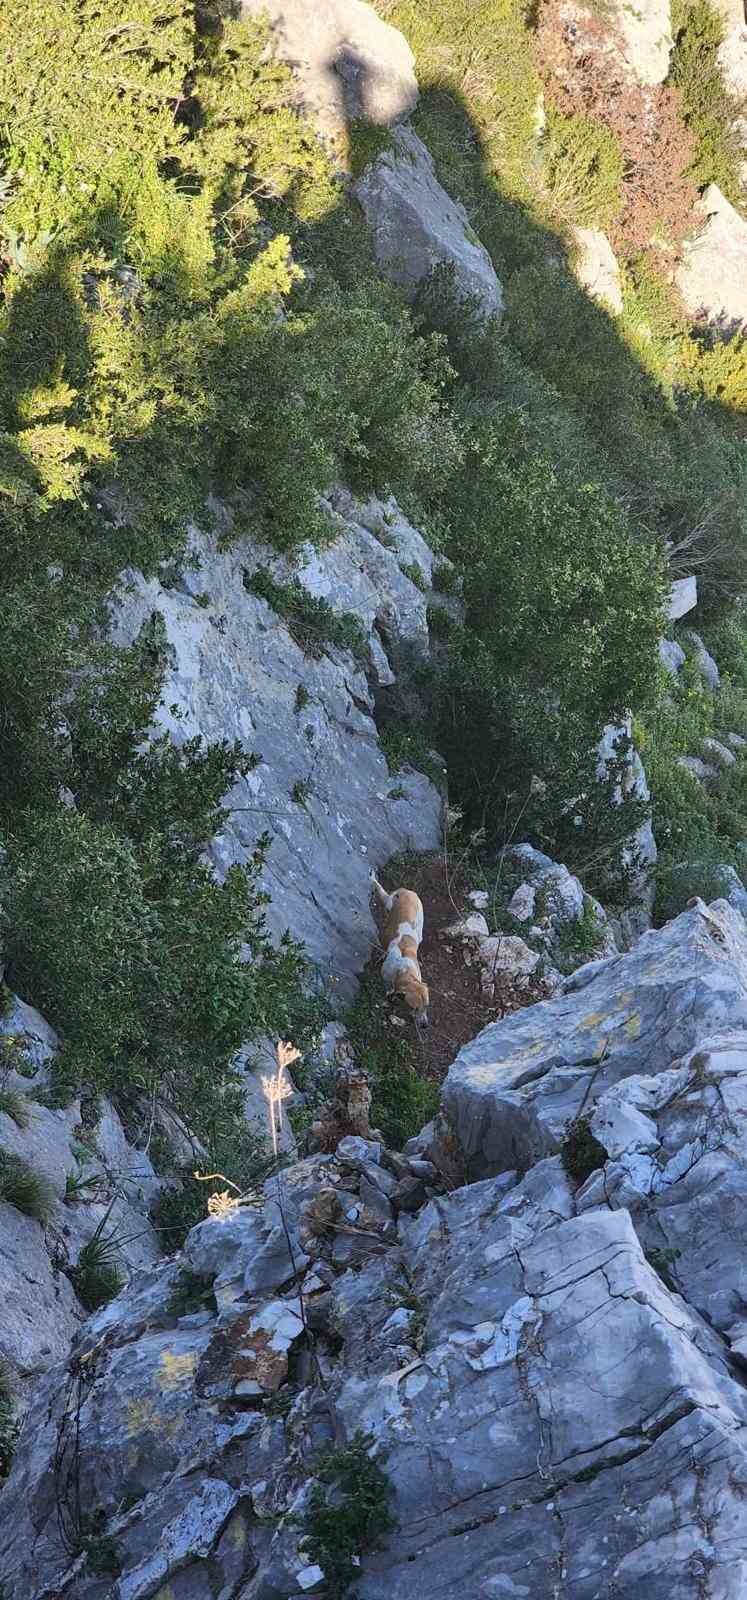 Antakya’da uçurumda mahsur kalan köpek kurtarıldı
